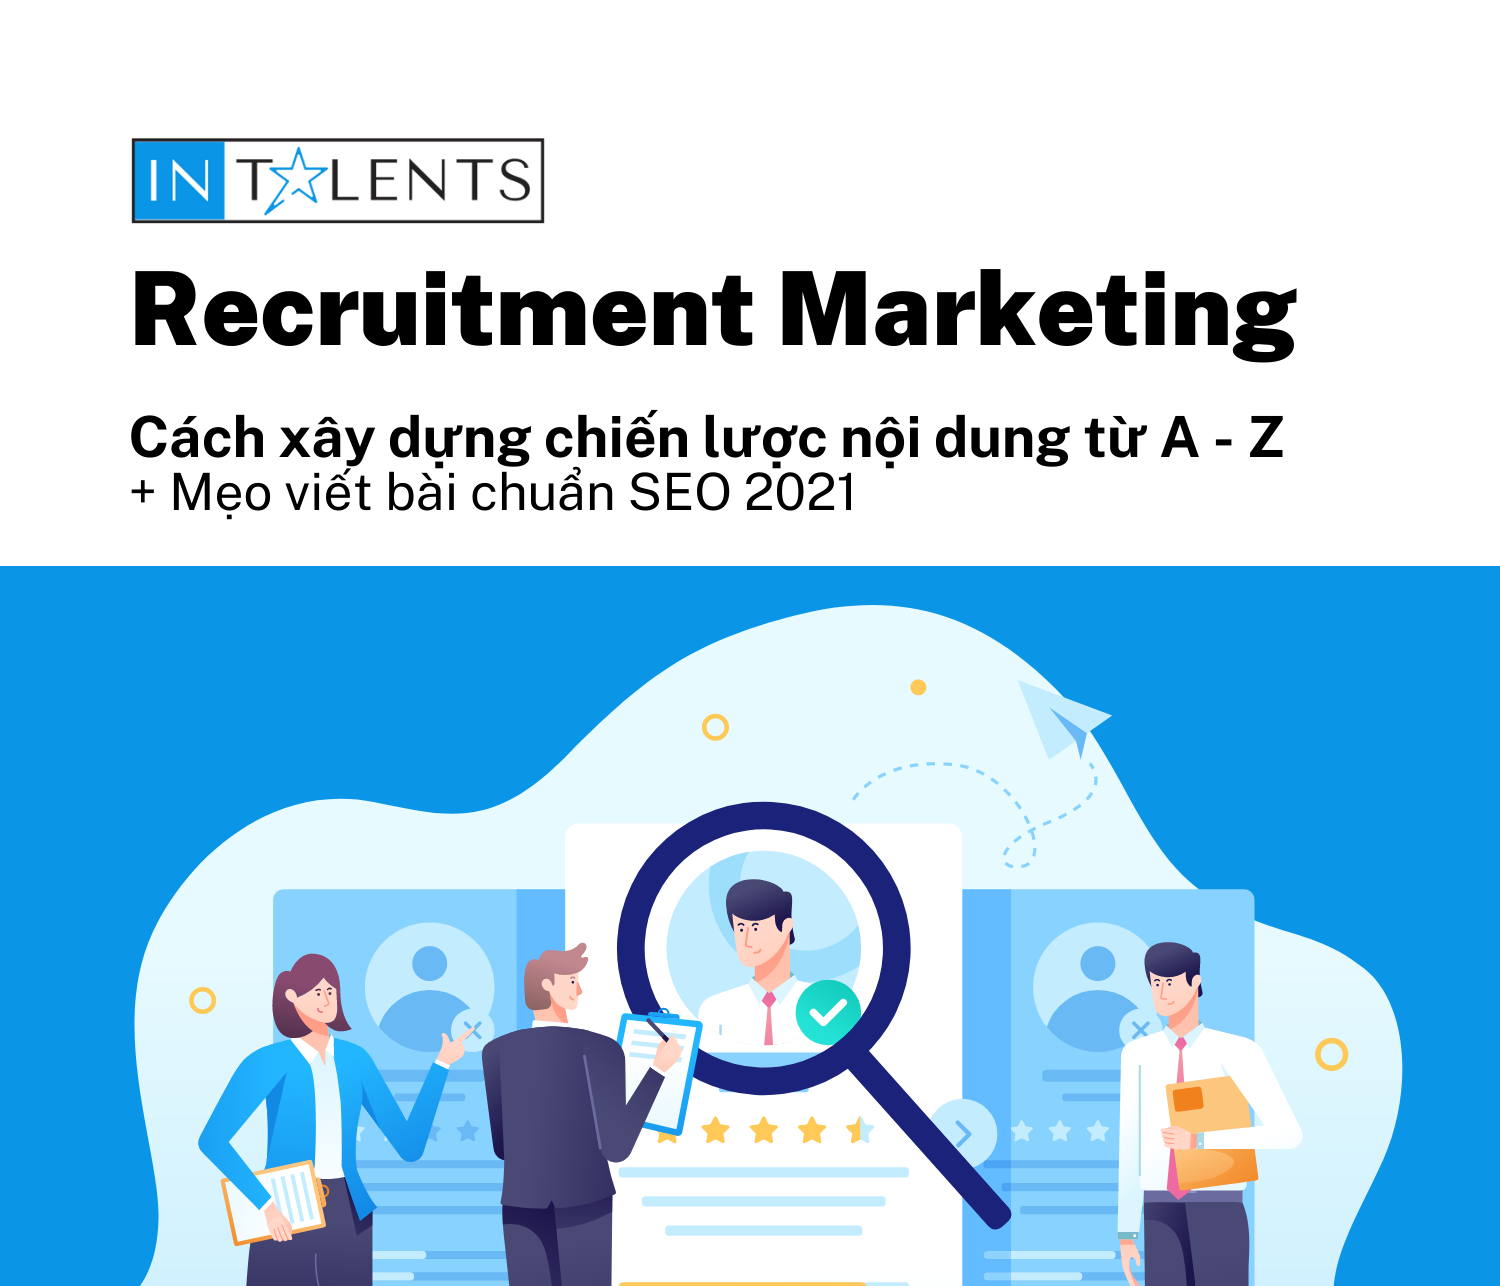 Recruitment Marketing là gì? Xây dựng chiến lược nội dung từ A – Z